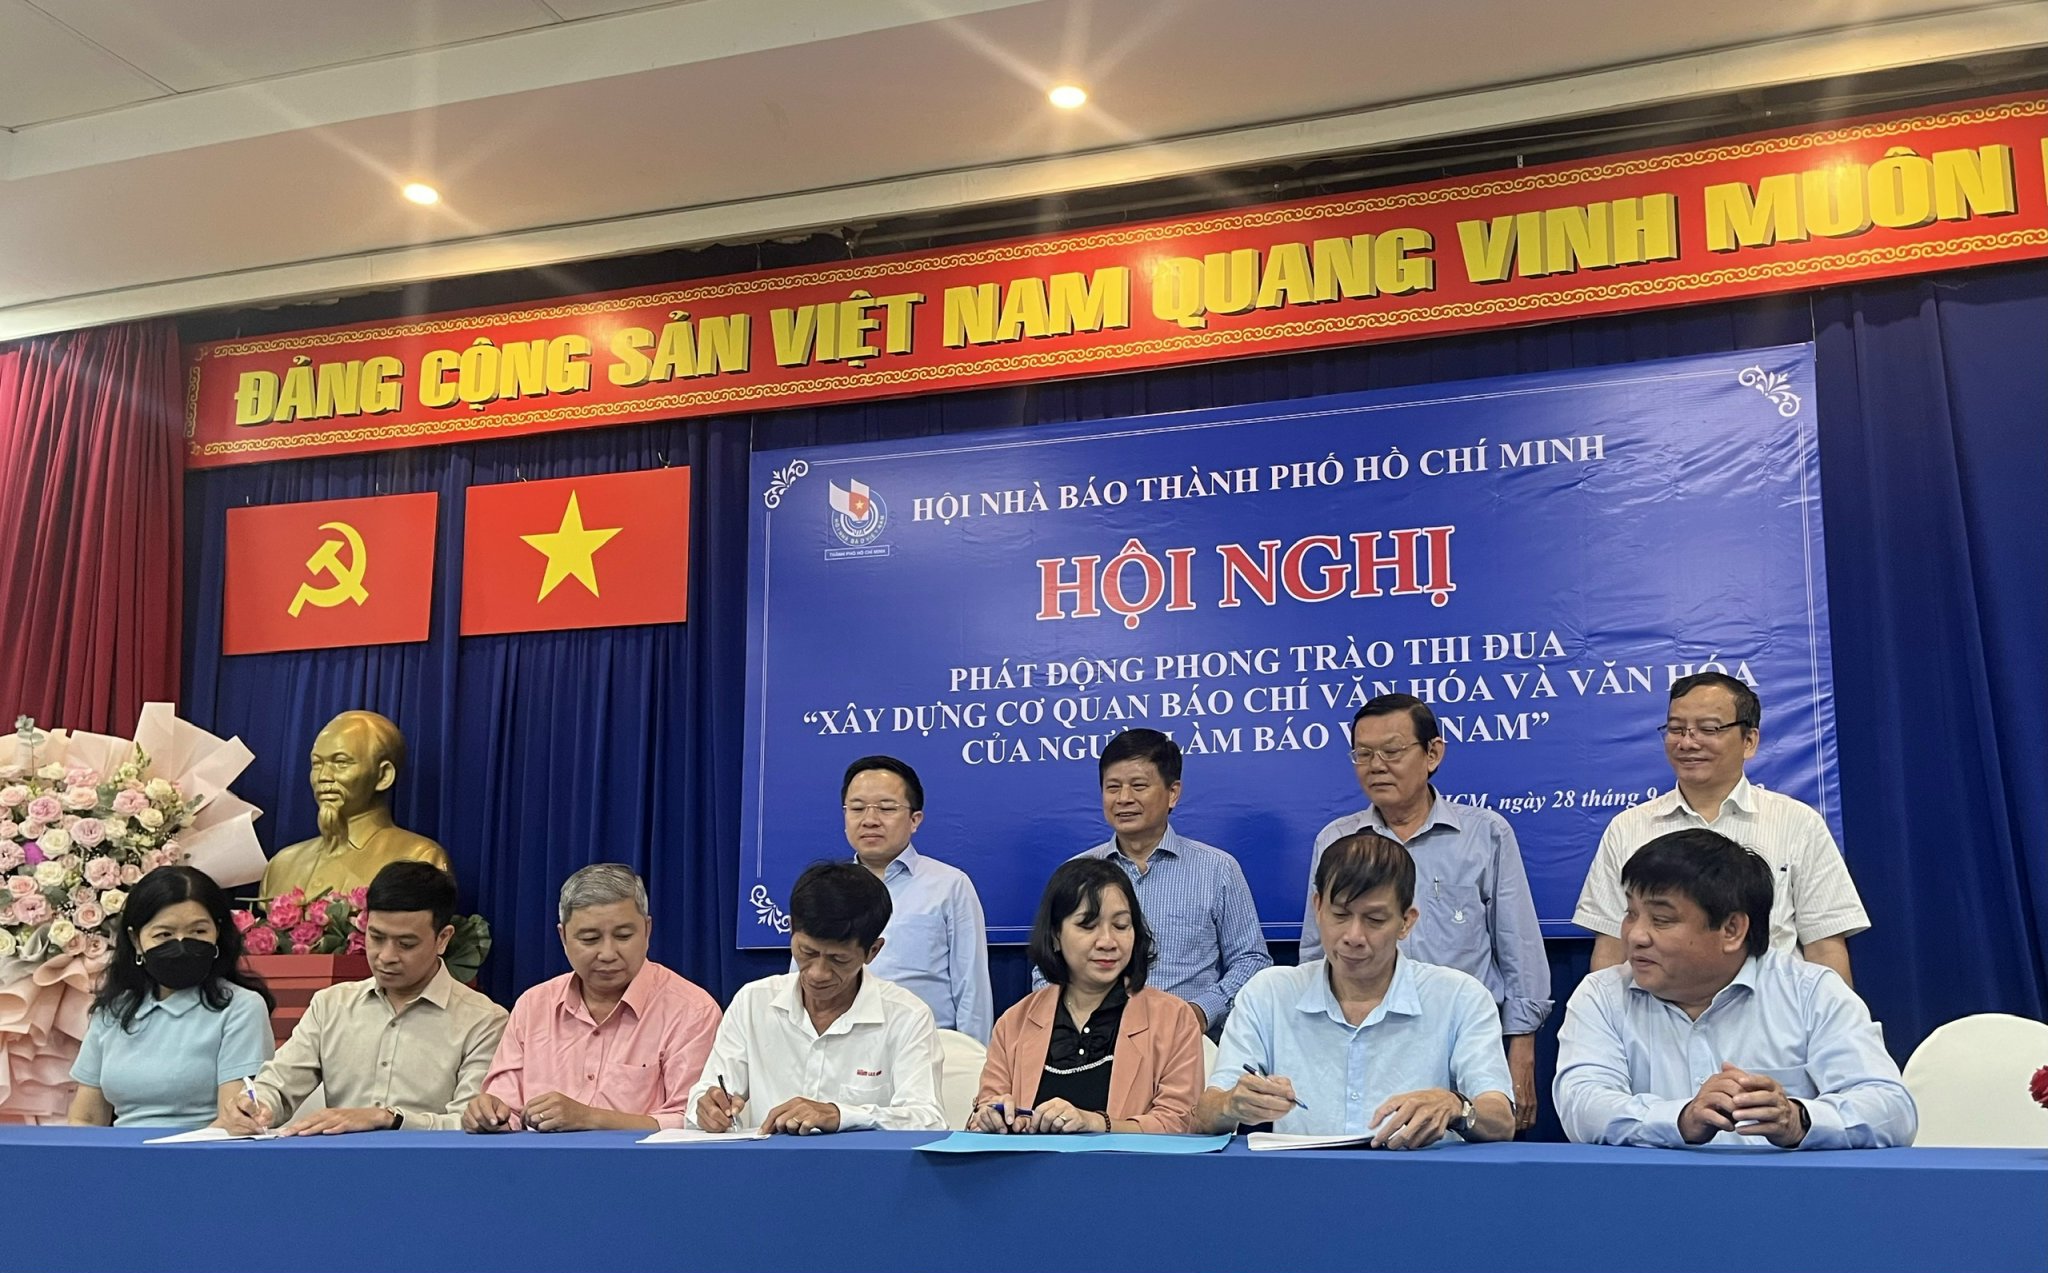 Hội Nhà báo TP.Hồ Chí Minh tổ chức Hội nghị Phát động phong trào thi đua xây dựng môi trường văn hóa trong các cơ quan báo chí